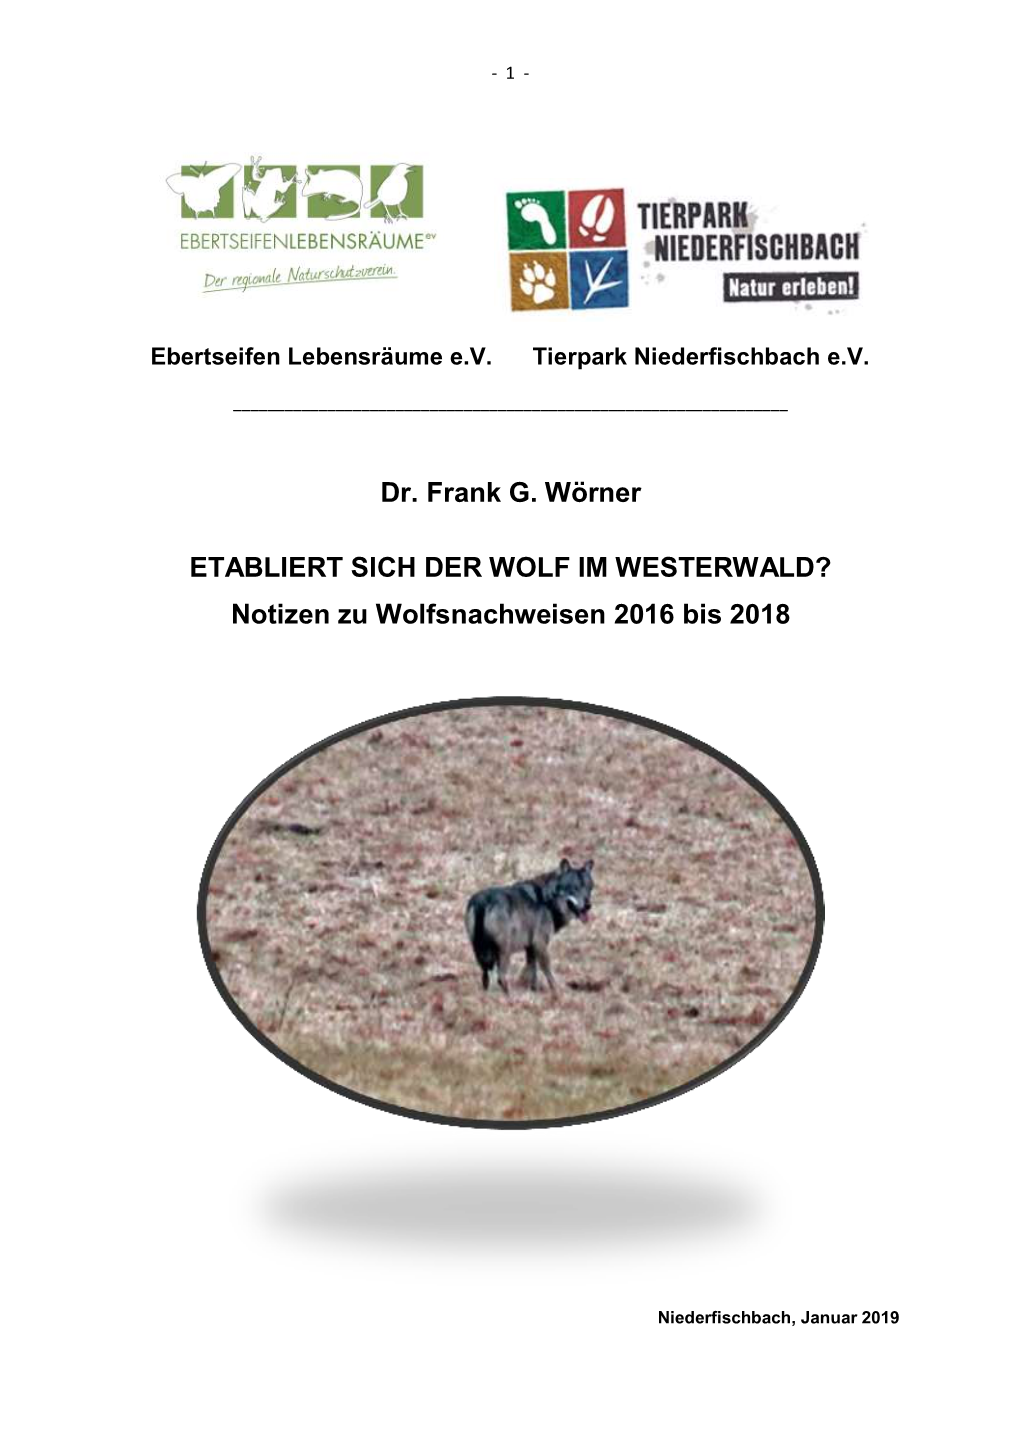 Dr. Frank G. Wörner ETABLIERT SICH DER WOLF IM WESTERWALD